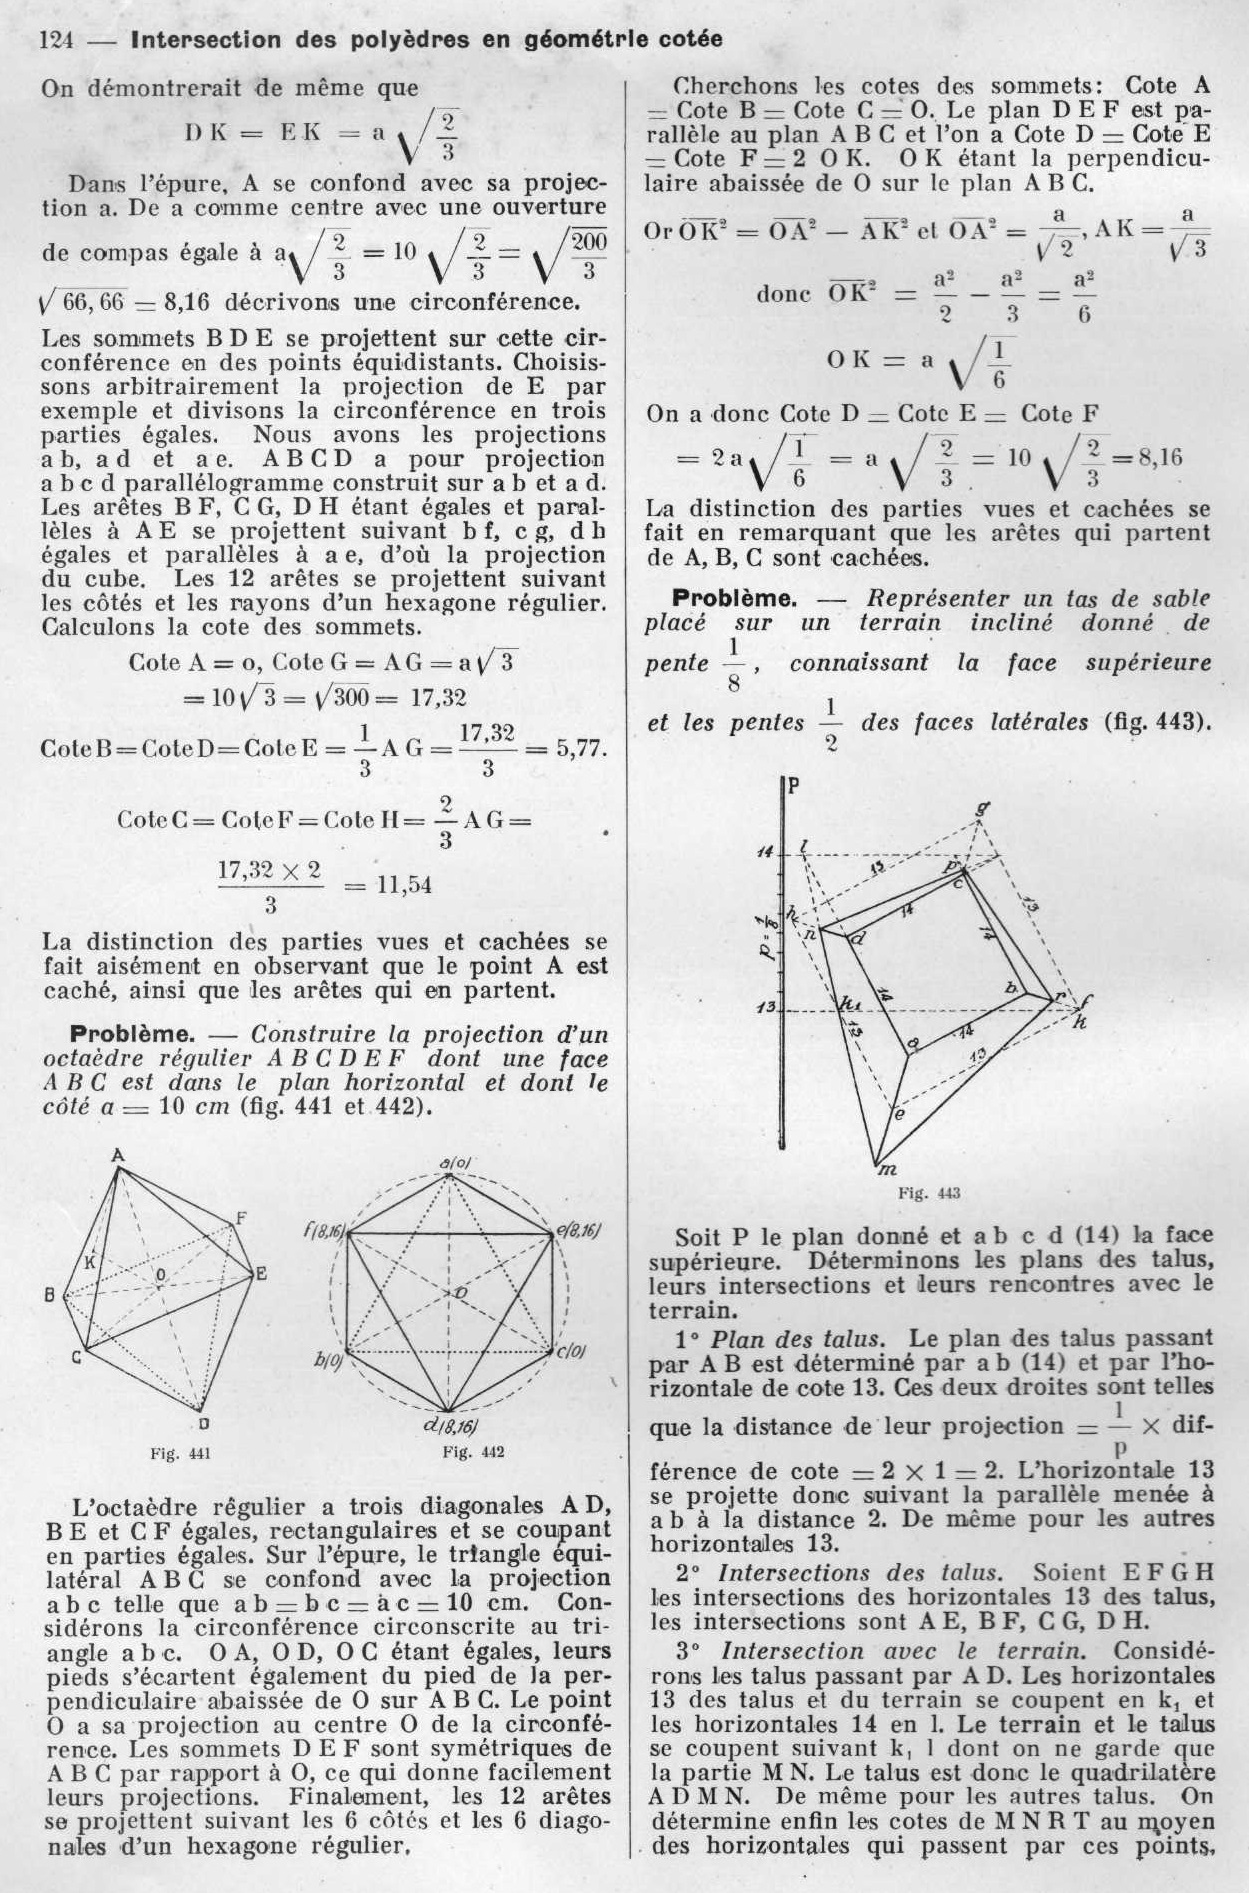 Intersection des polyèdres en géométrie cotée